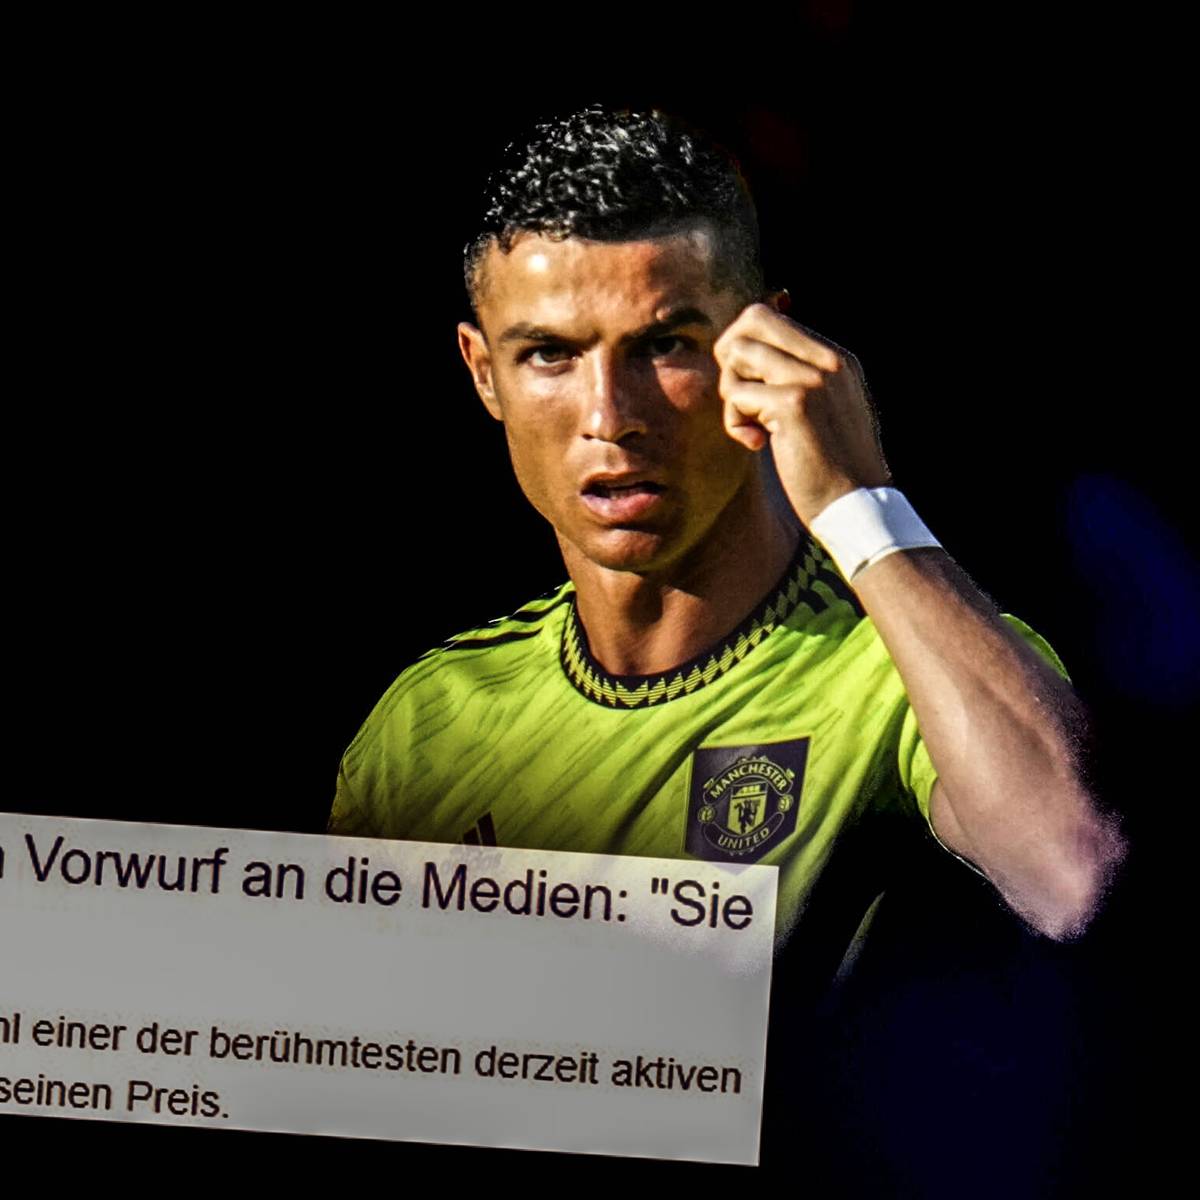 Ronaldo-Kritik berechtigt? "Er sollte lieber Taten sprechen lassen!"